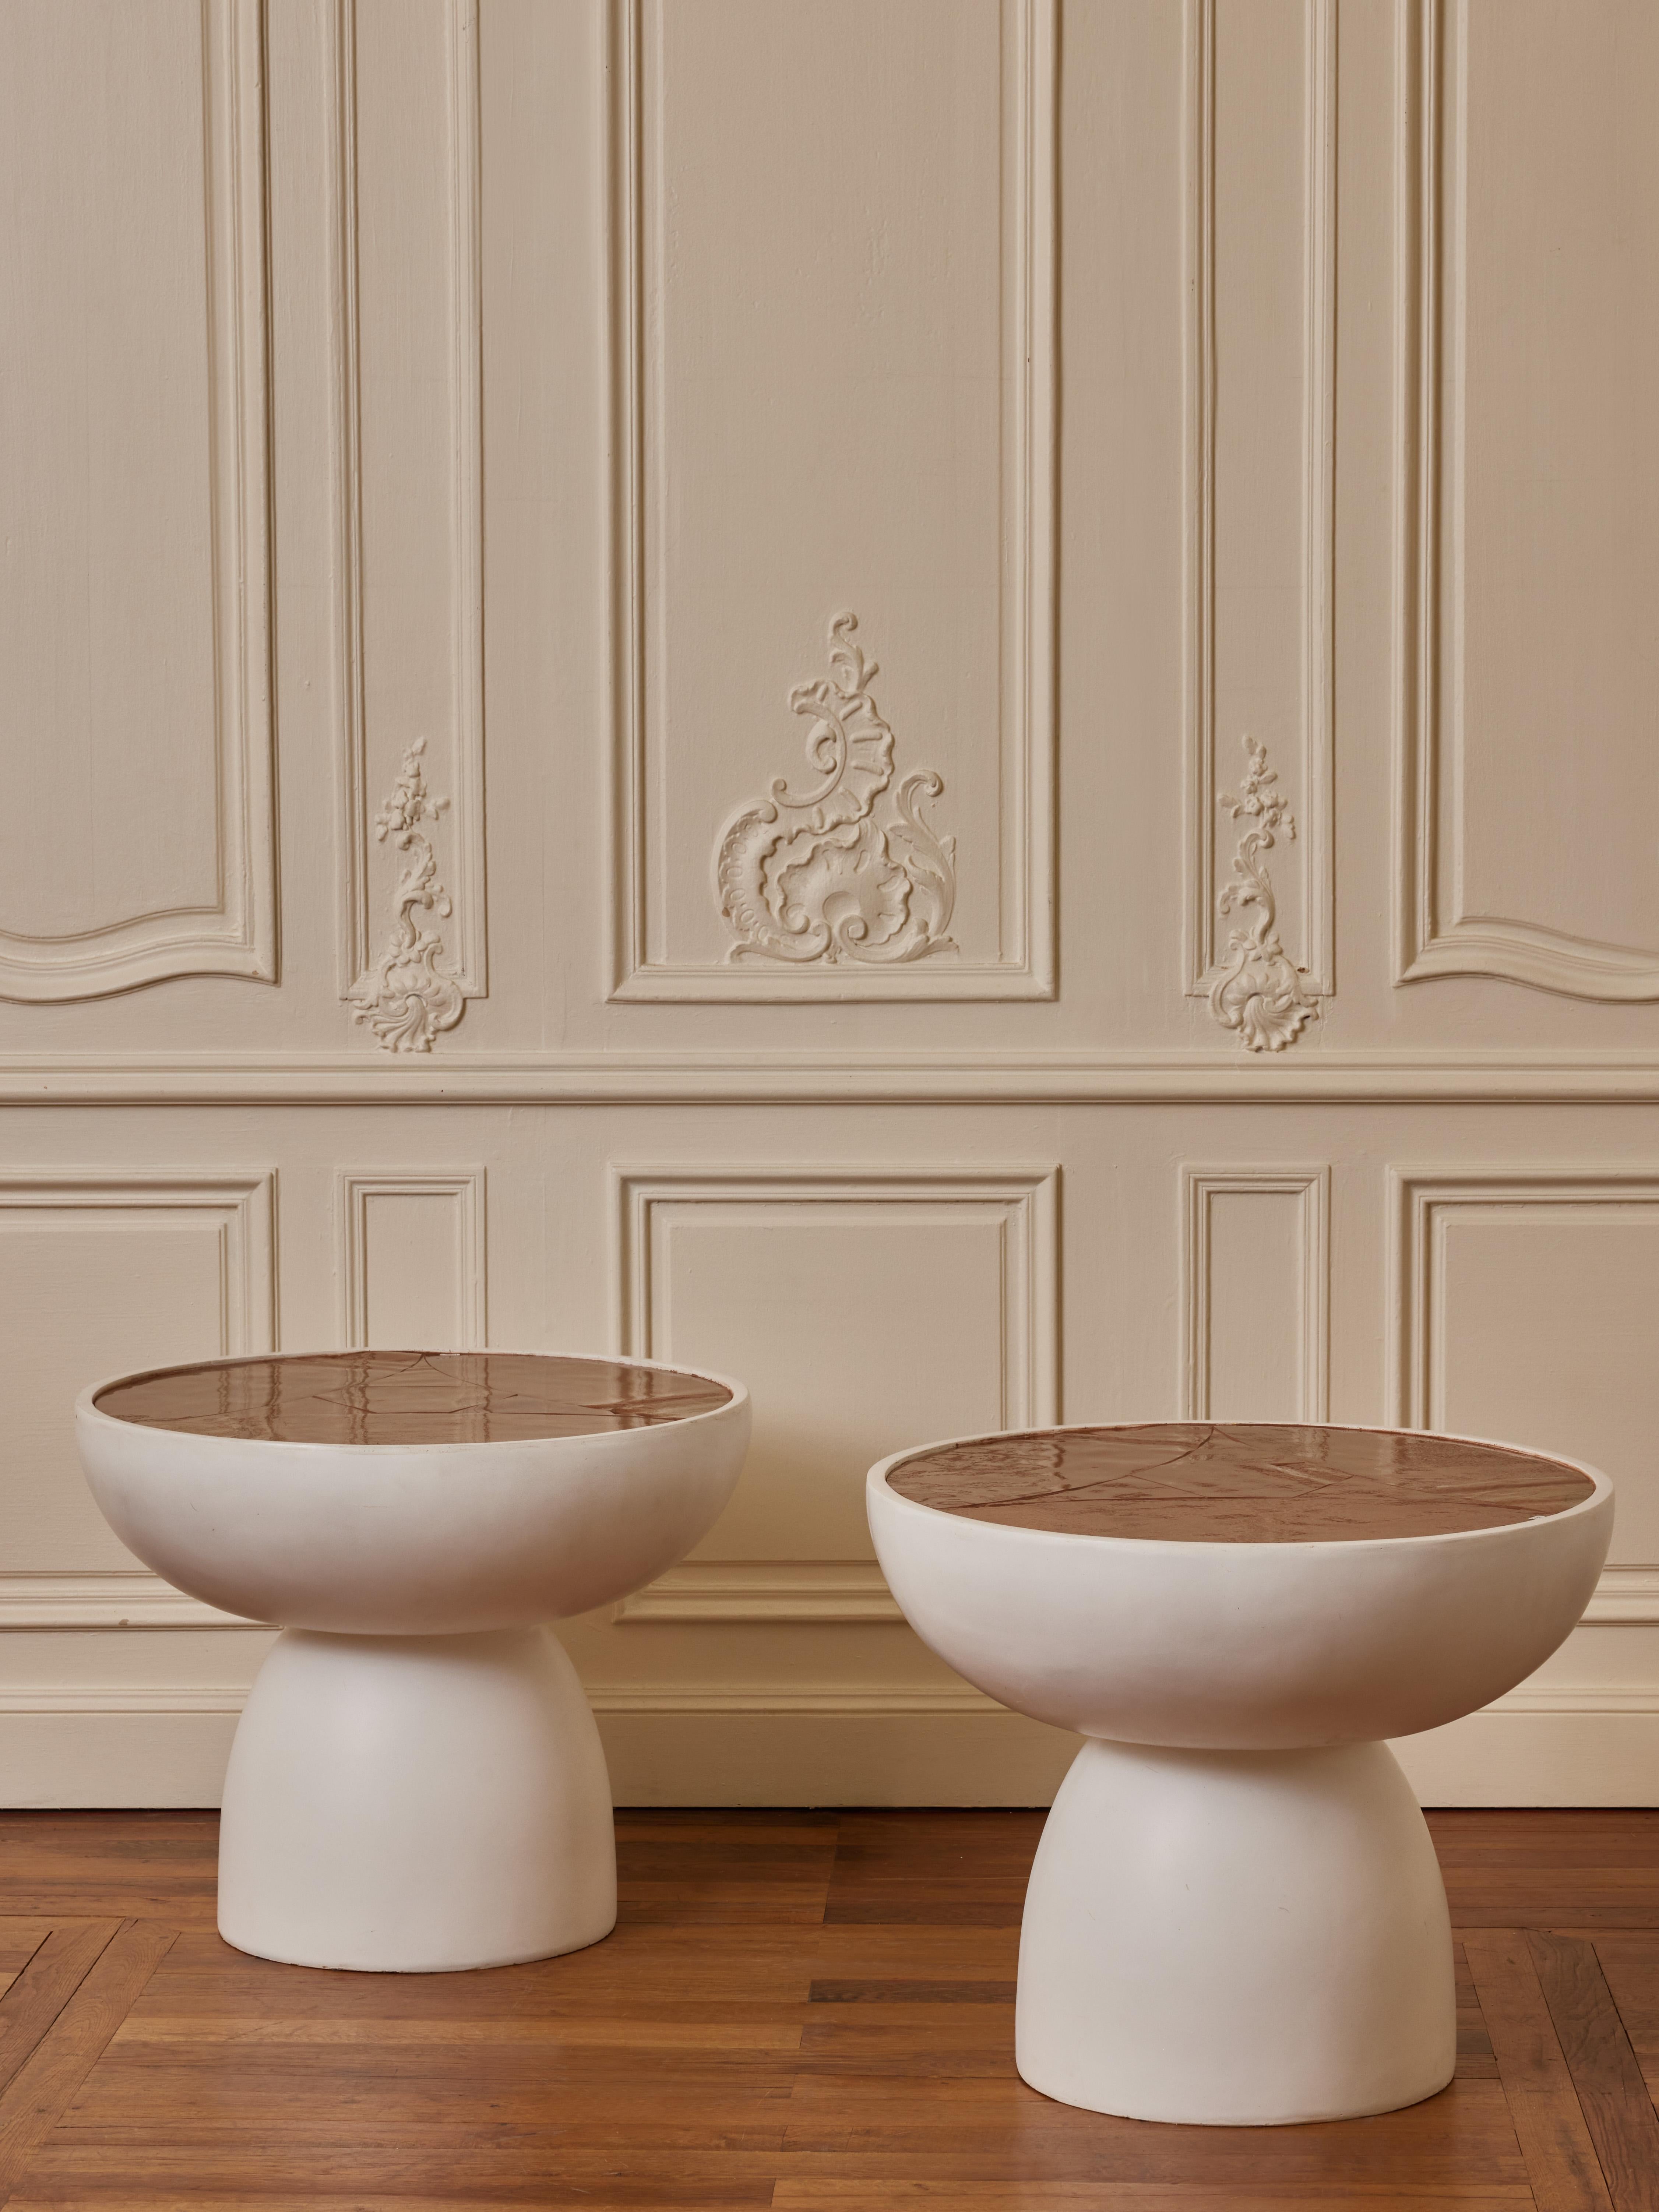 Superb Paar Sockel in weißer Keramik mit Top in alten Murano Glasplatten.
Gestaltung durch das Studio Glustin.
Italien, 2023.